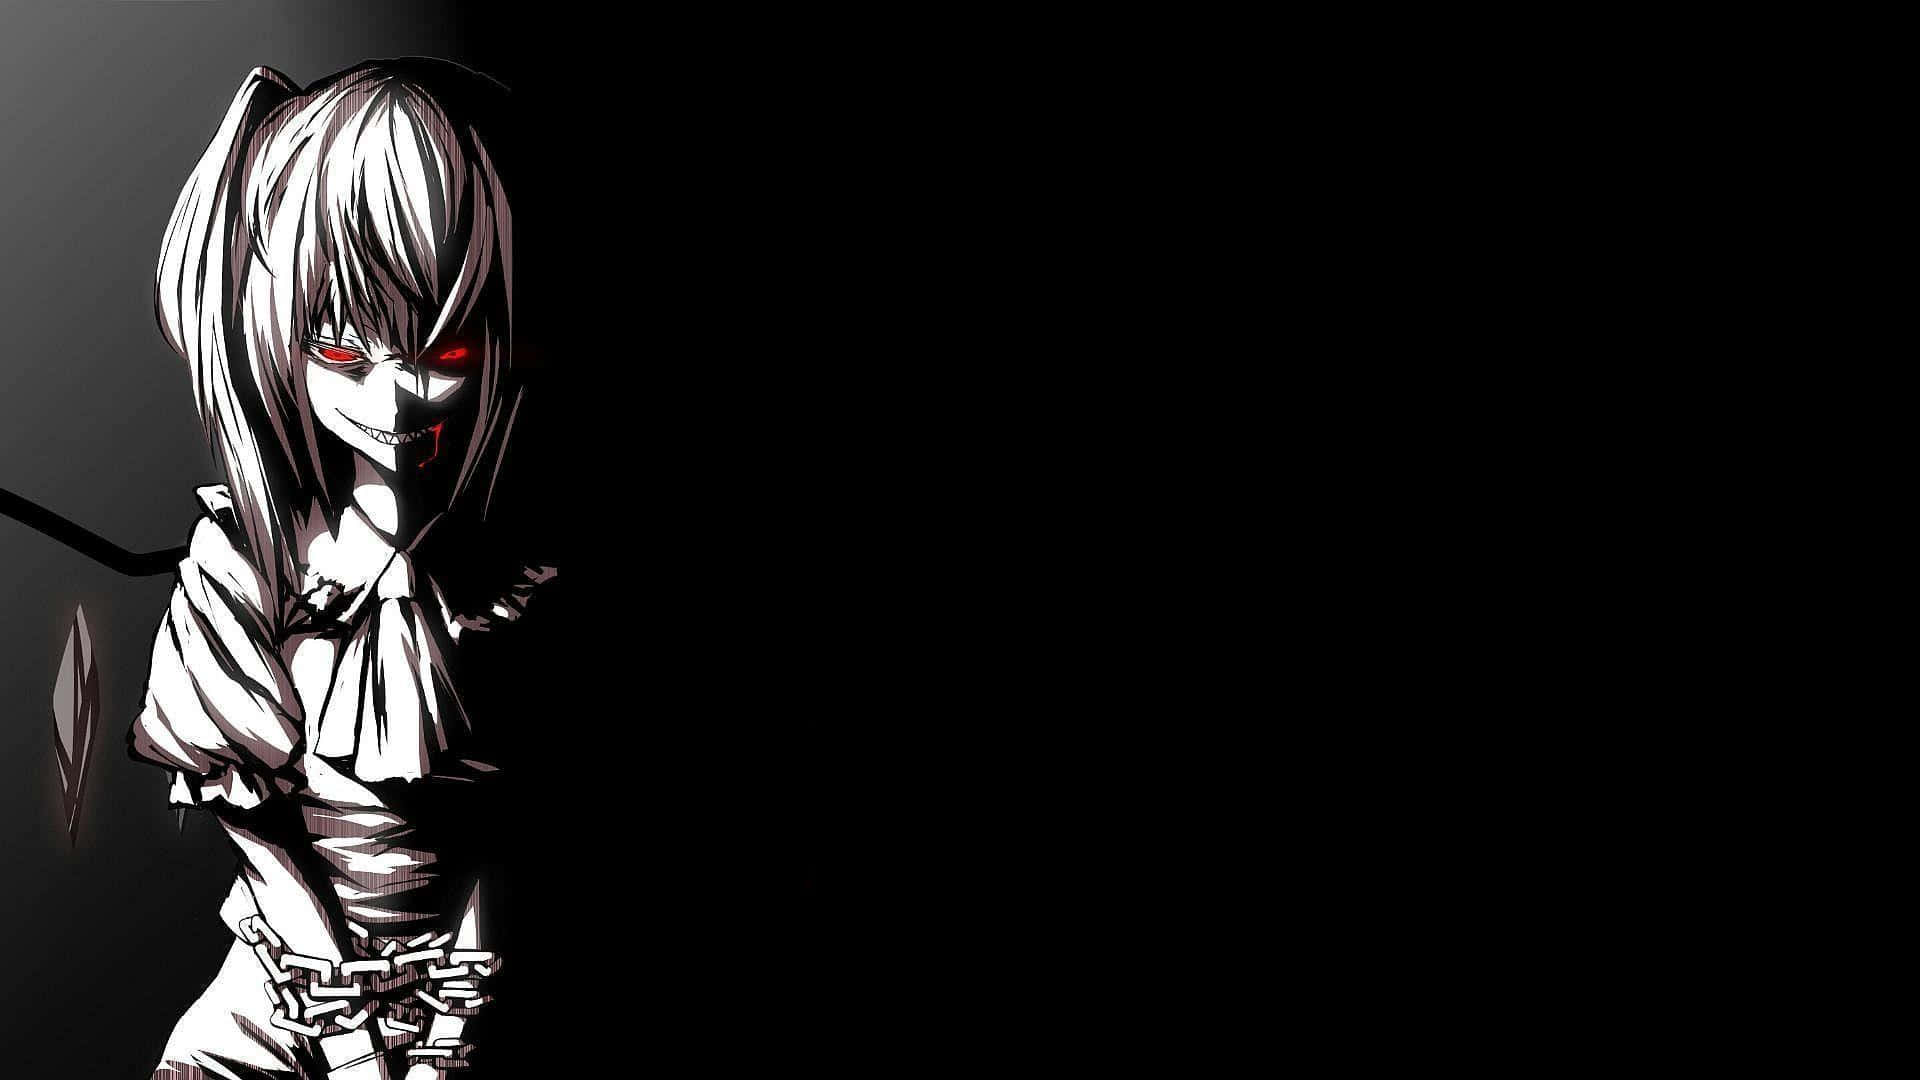 Dark Aesthetic Anime Girl Laughing Evilly Wallpaper